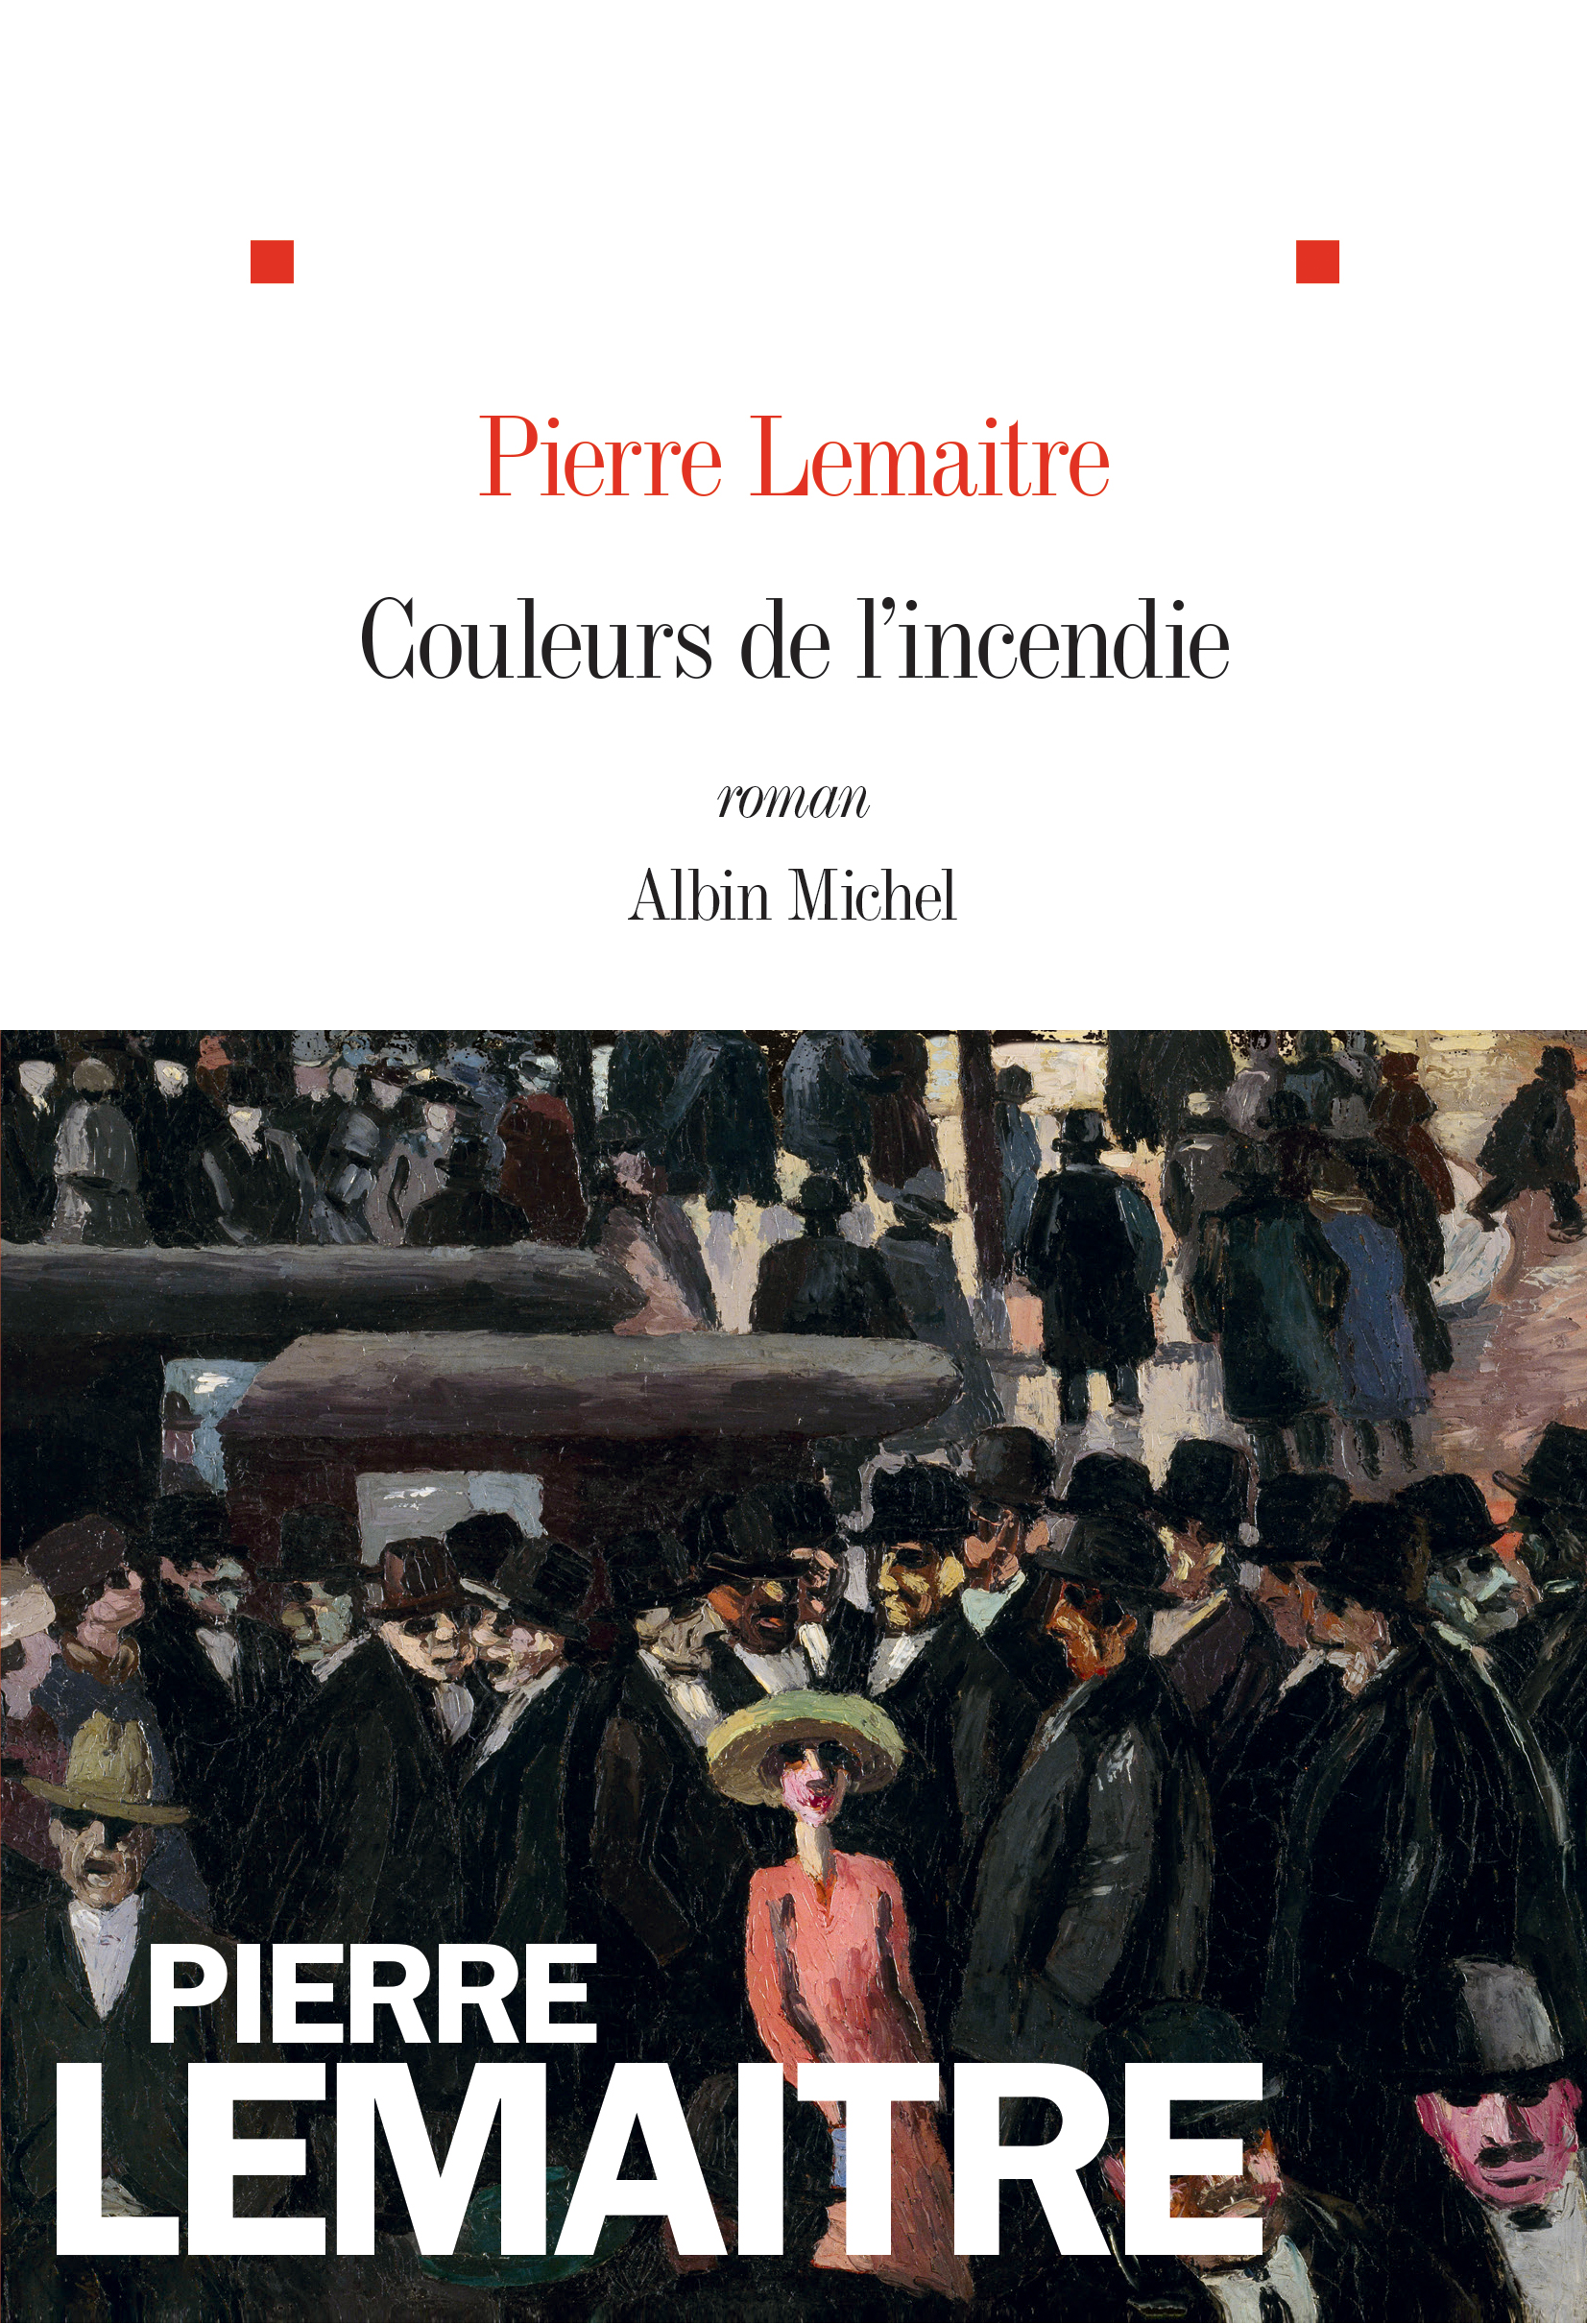 Couleurs de l'incendie  (Pierre Lemaitre - Albin Michel)